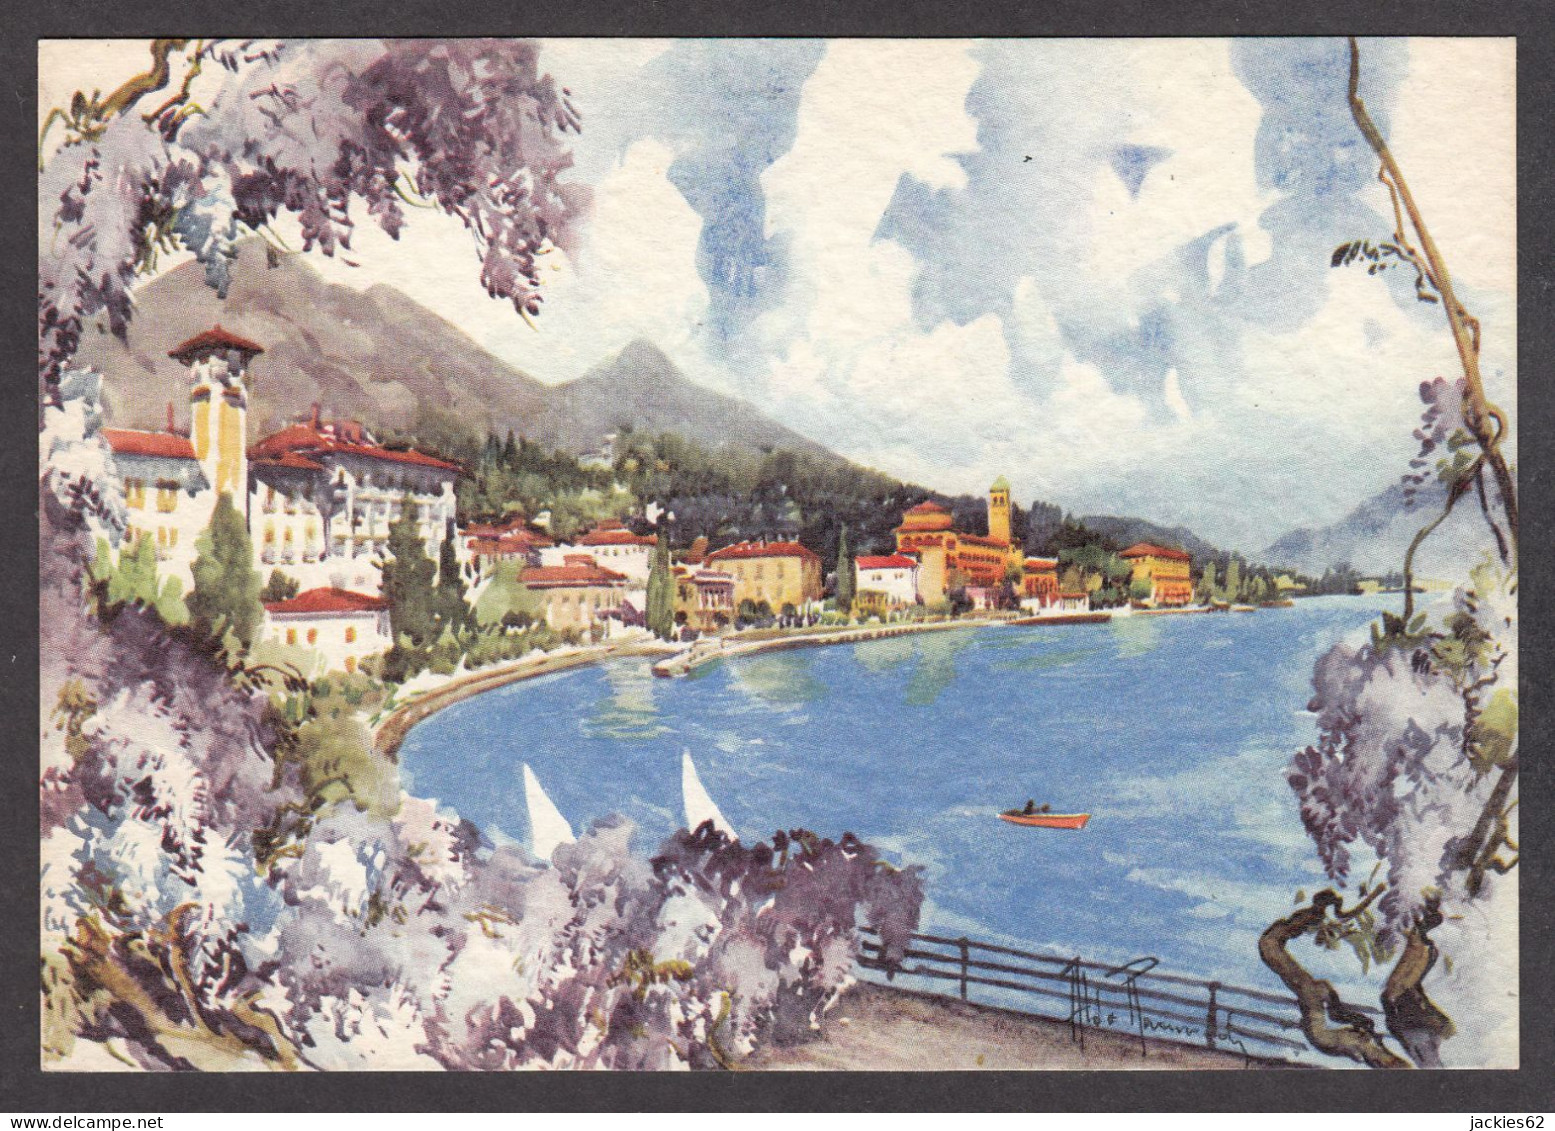 PR345/ Aldo RAIMONDI, *Gardone Riviera, Lago Di Garda* - Pintura & Cuadros